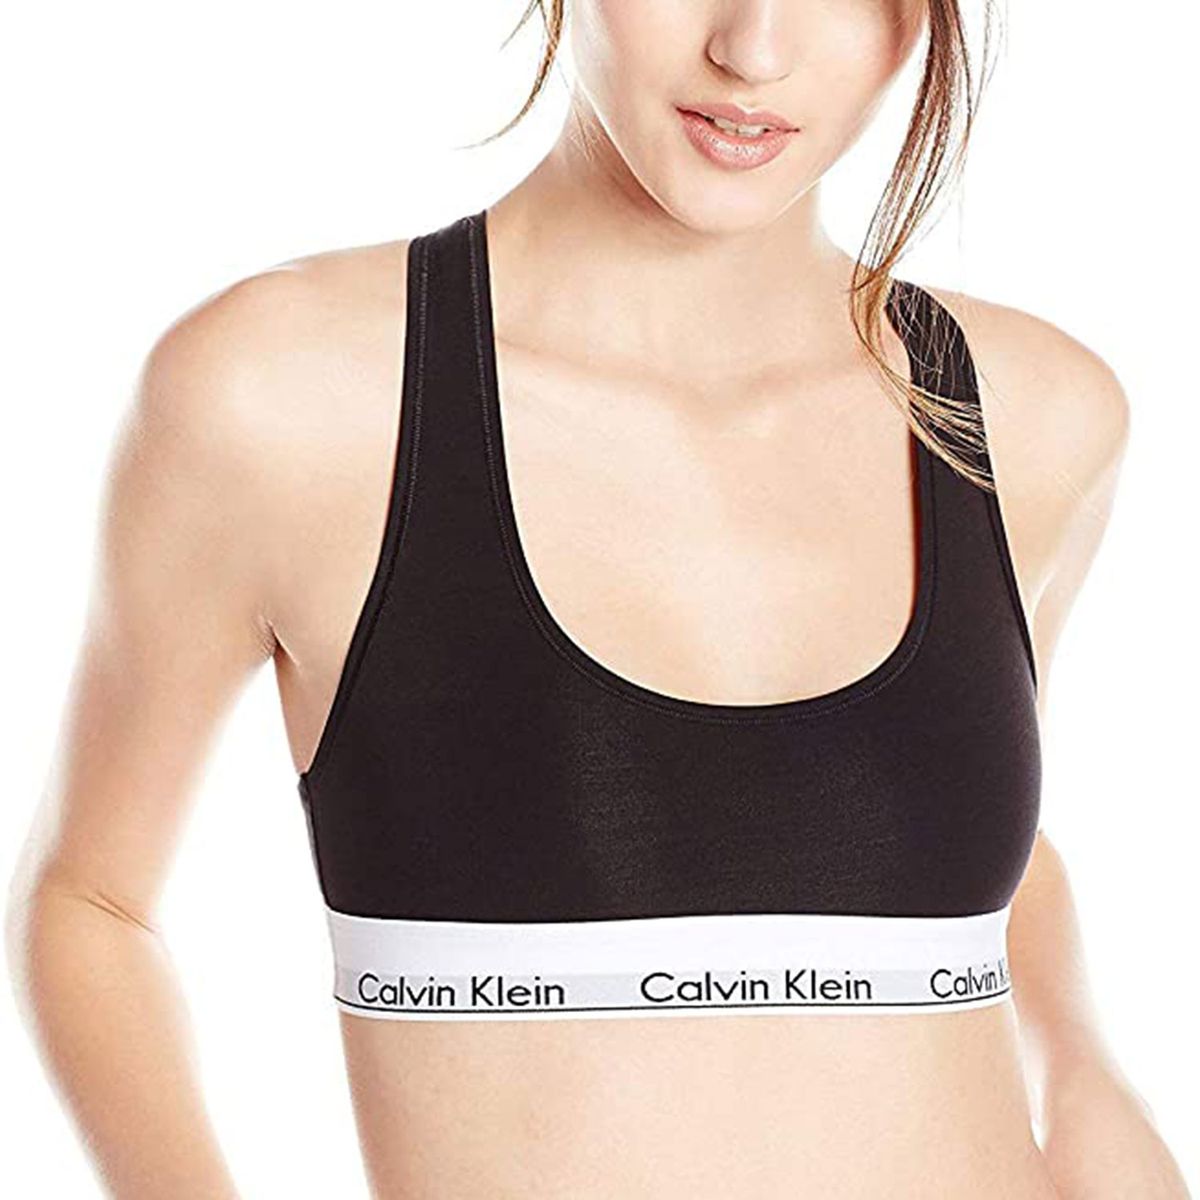 Calvin Klein underwear sale